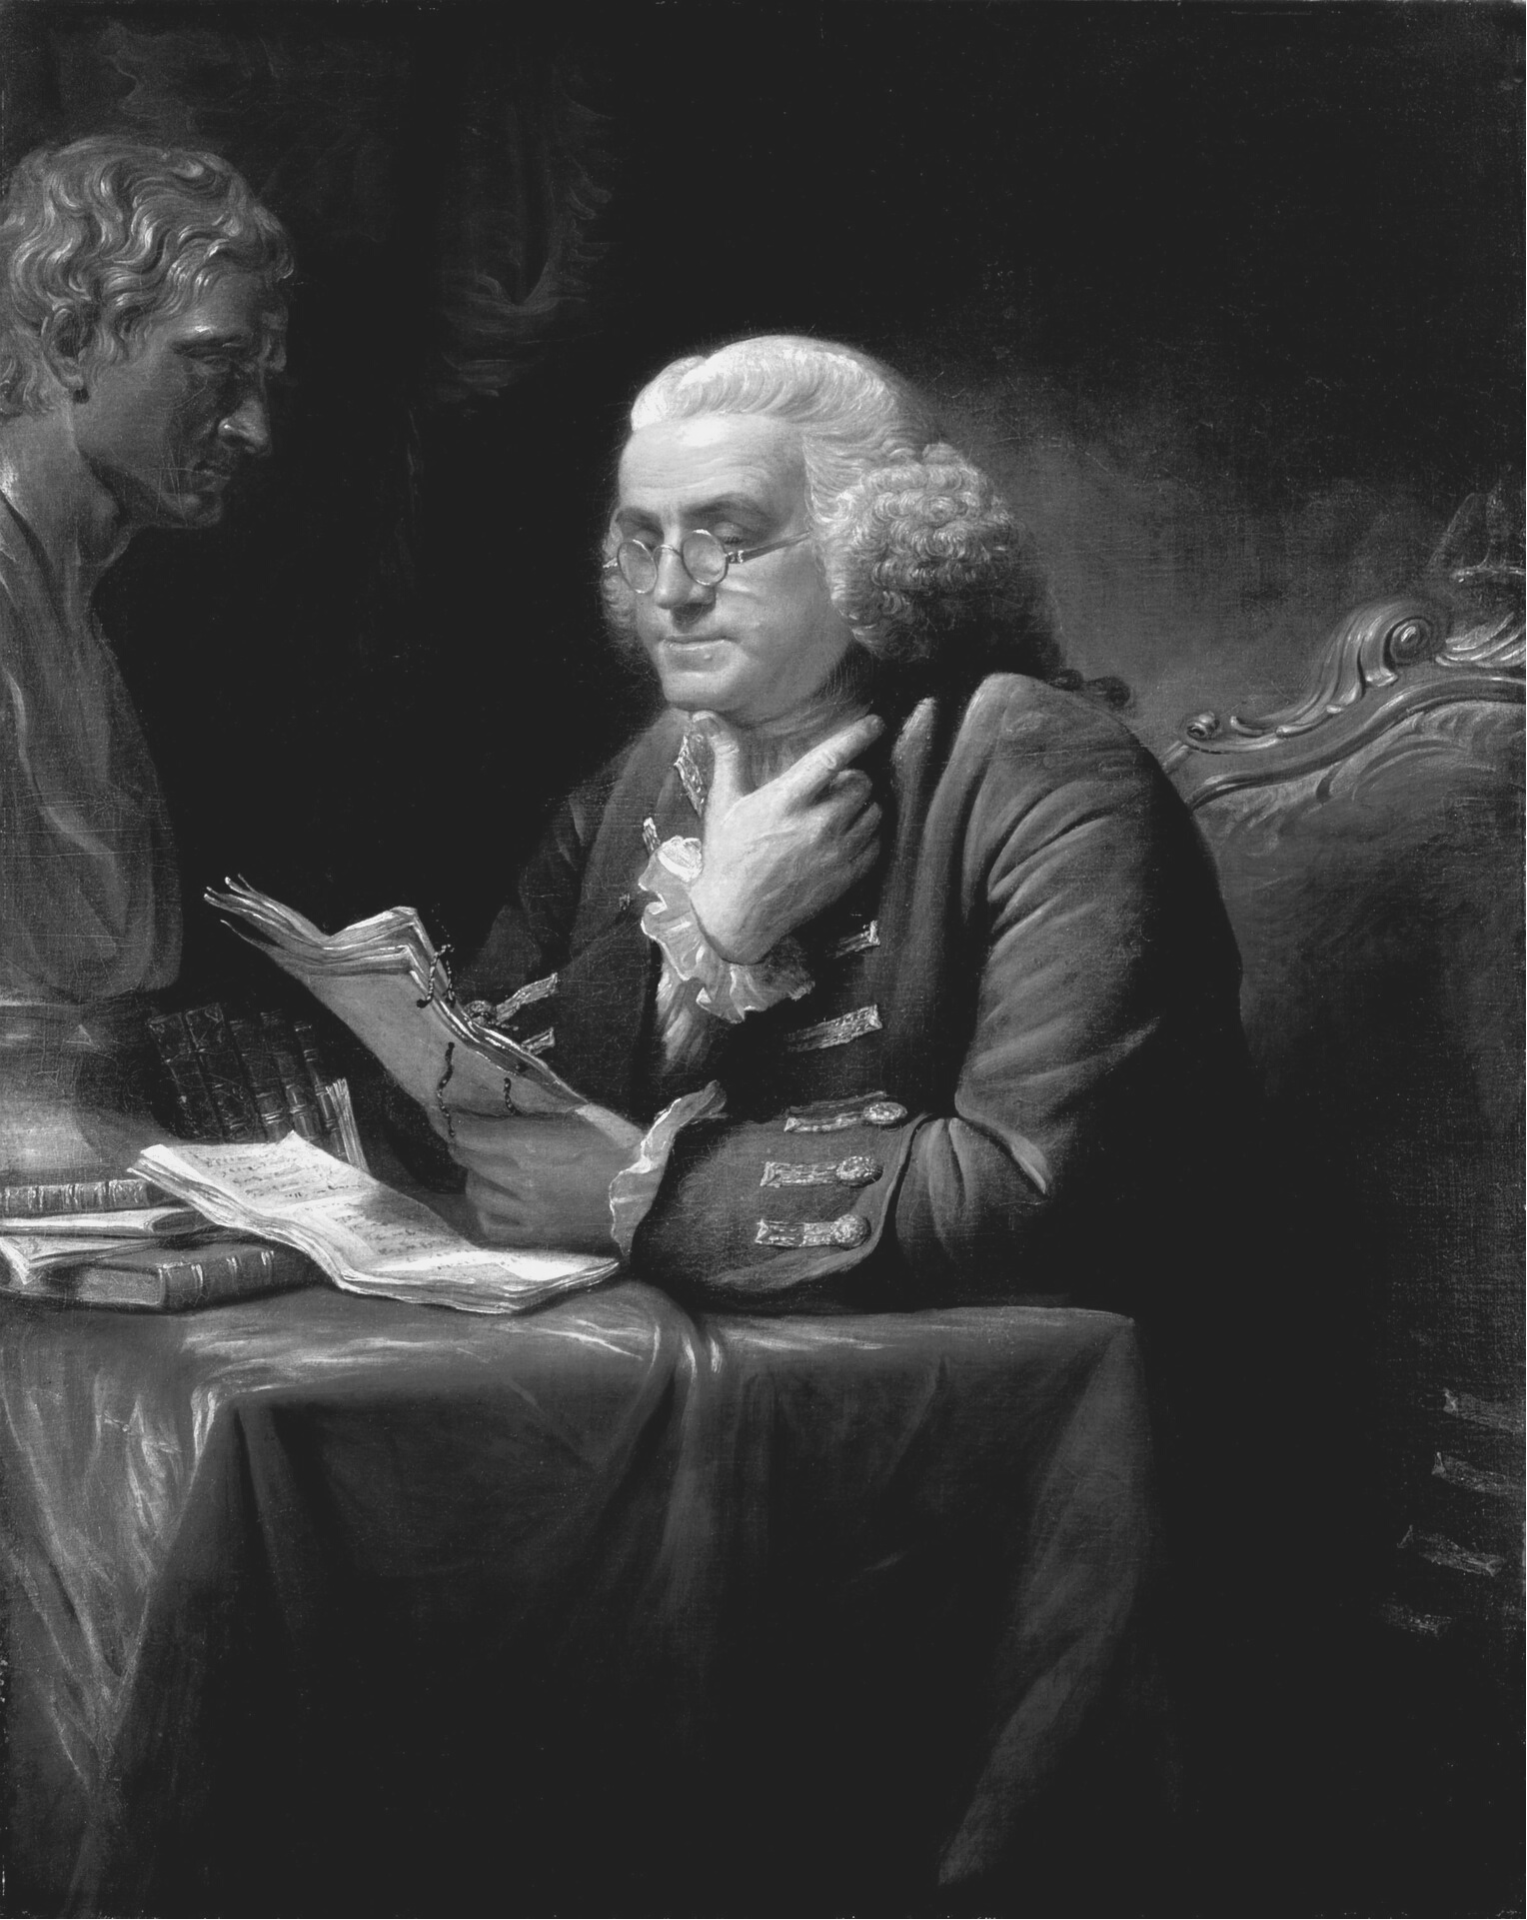 เบนจามิน แฟรงกลิน (Benjamin Franklin)